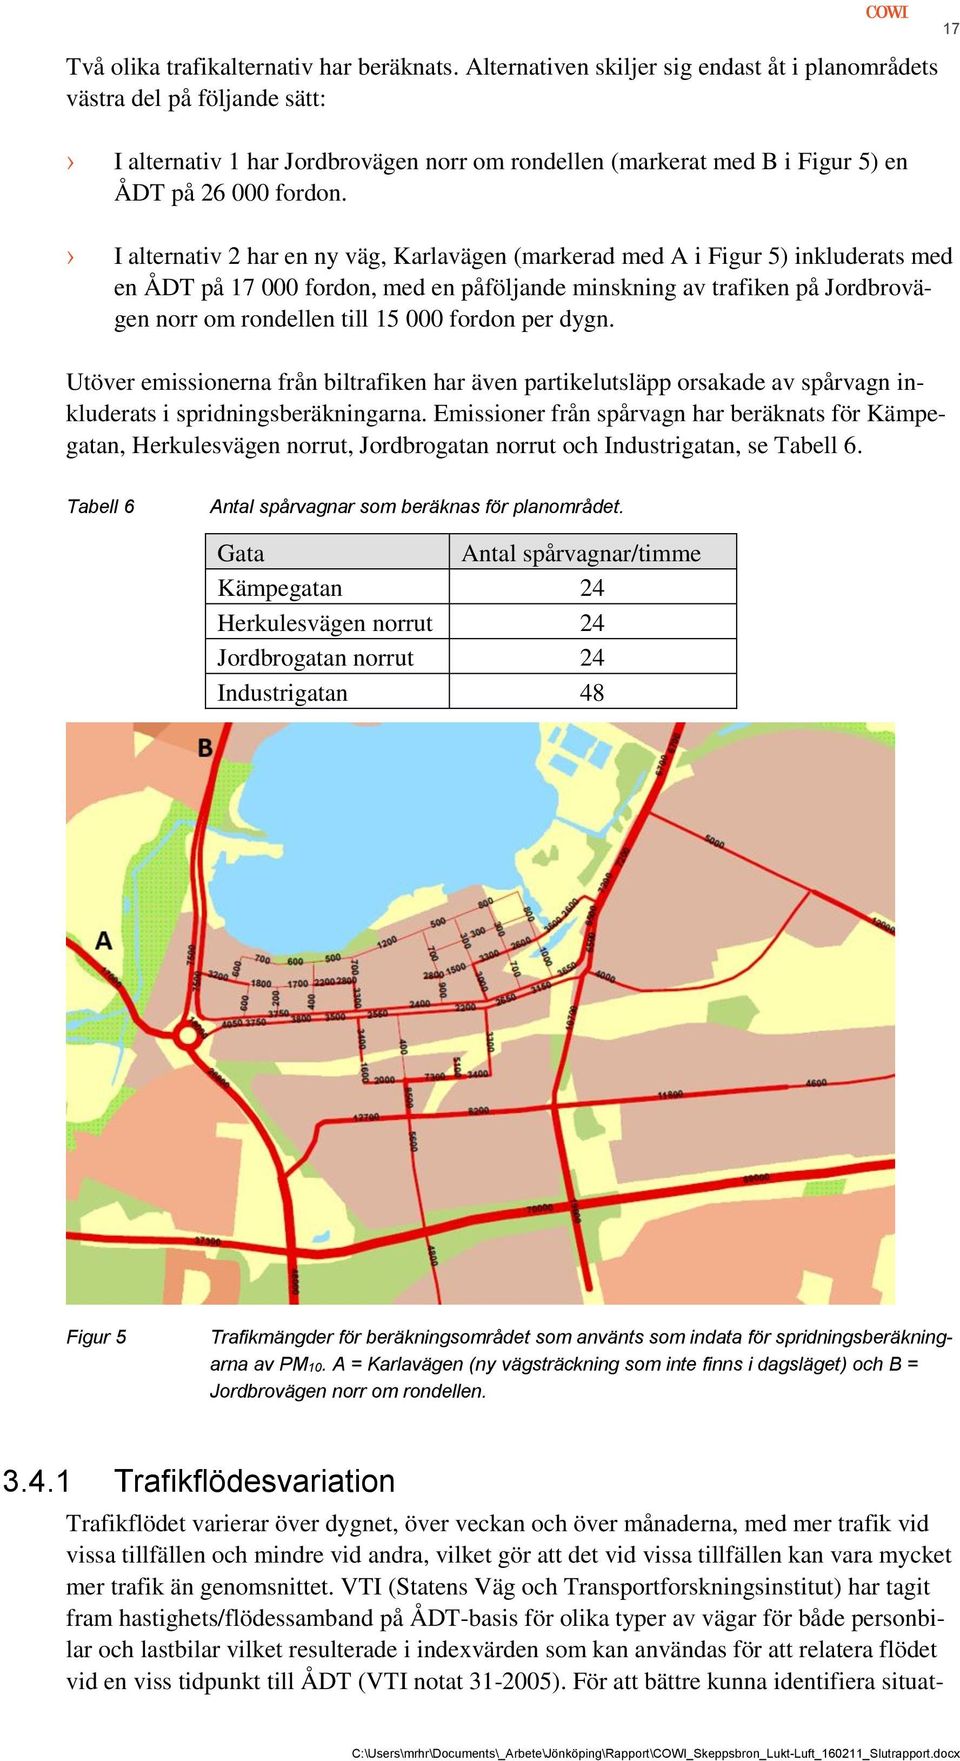 I alternativ 2 har en ny väg, Karlavägen (markerad med A i Figur 5) inkluderats med en ÅDT på 17 000 fordon, med en påföljande minskning av trafiken på Jordbrovägen norr om rondellen till 15 000